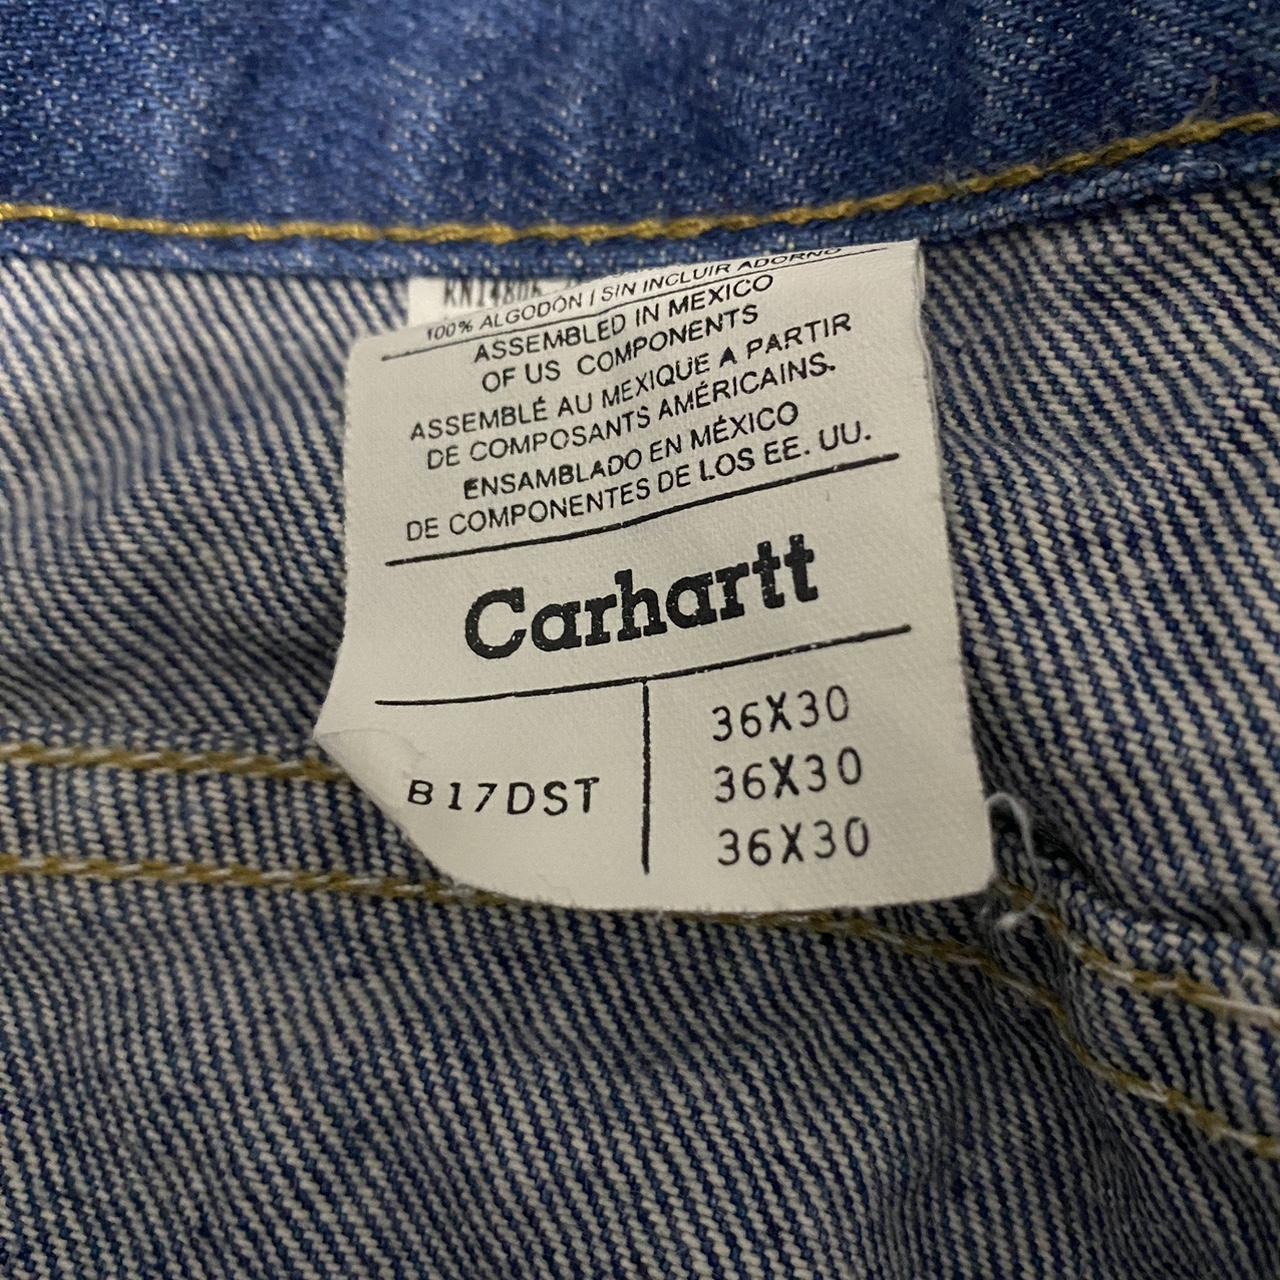 Vintage Carhartt dark wash jeans. Size 36x30. Super... - Depop